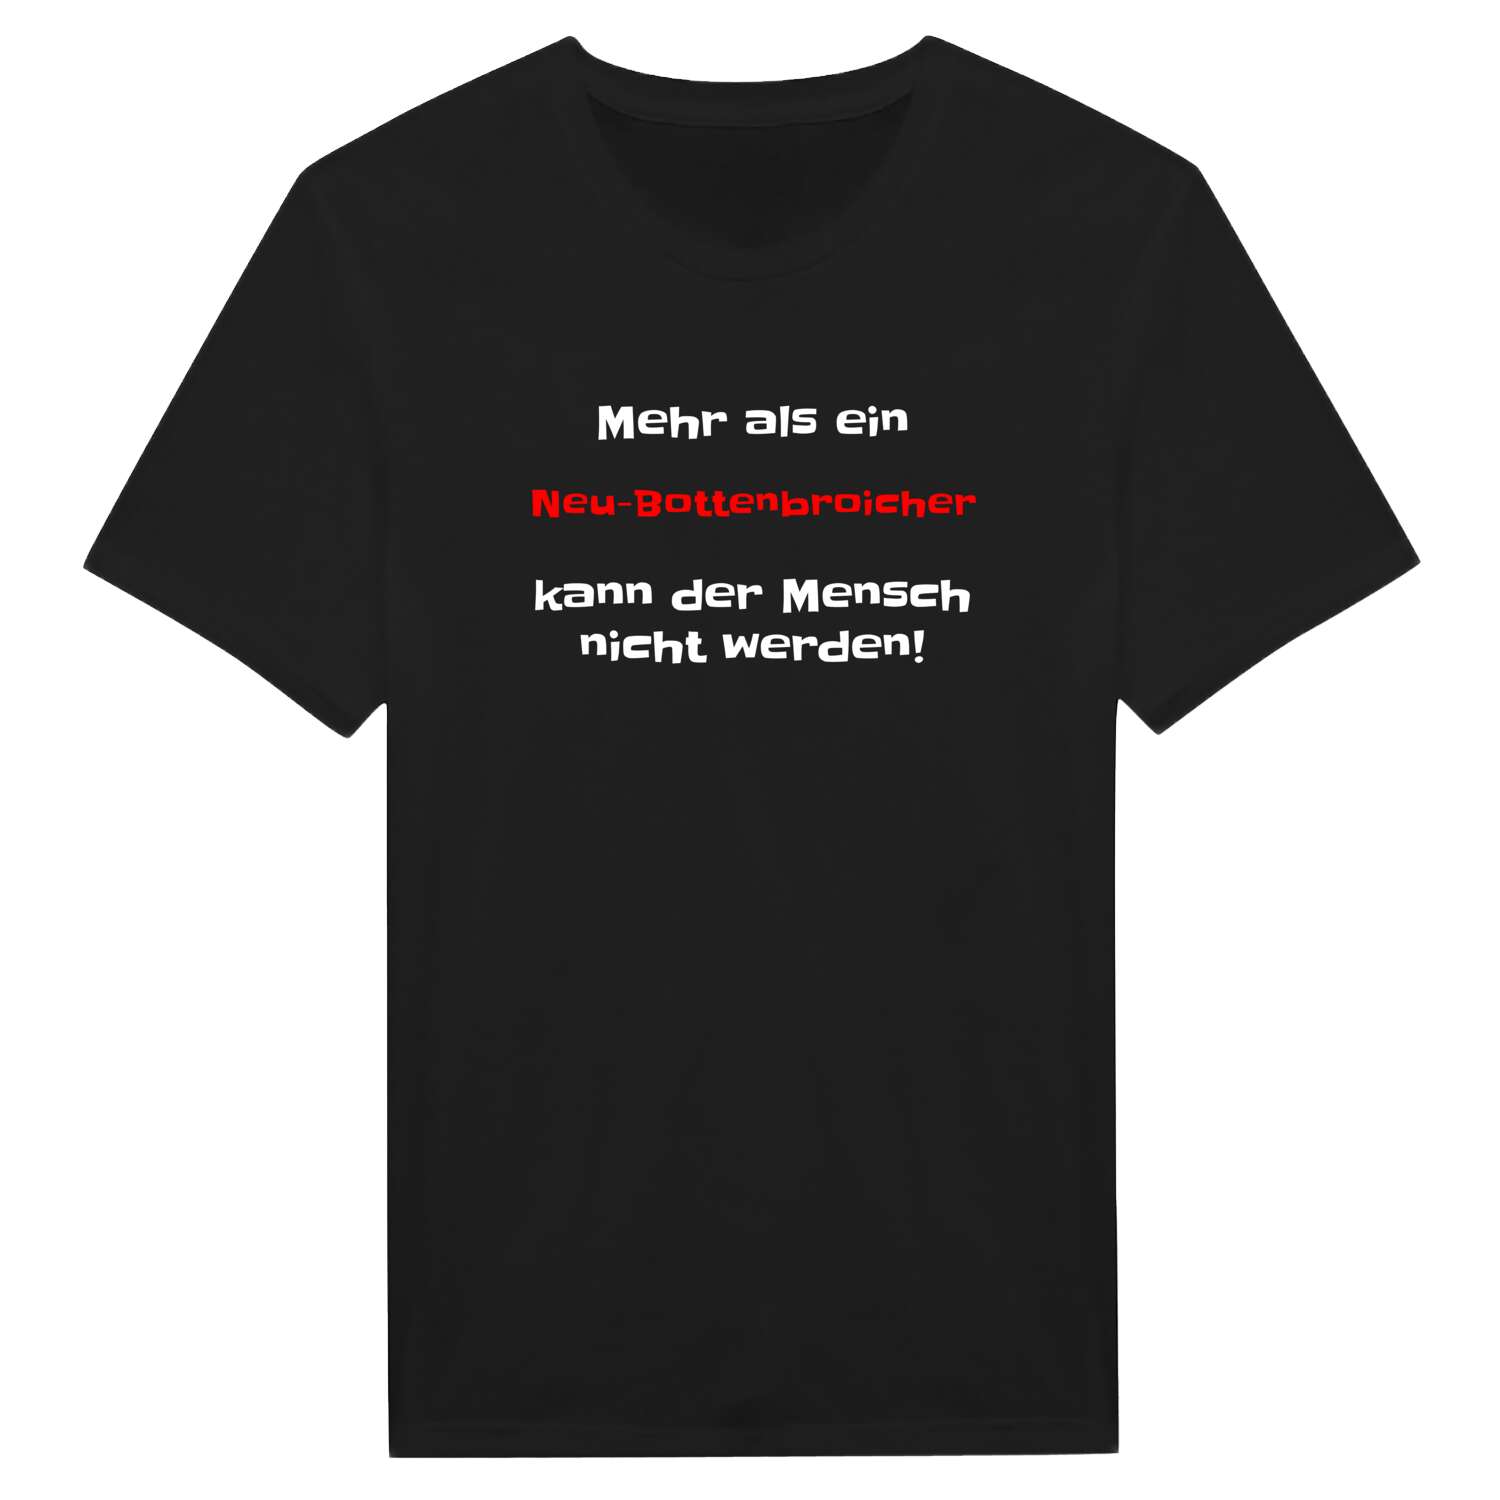 Neu-Bottenbroich T-Shirt »Mehr als ein«